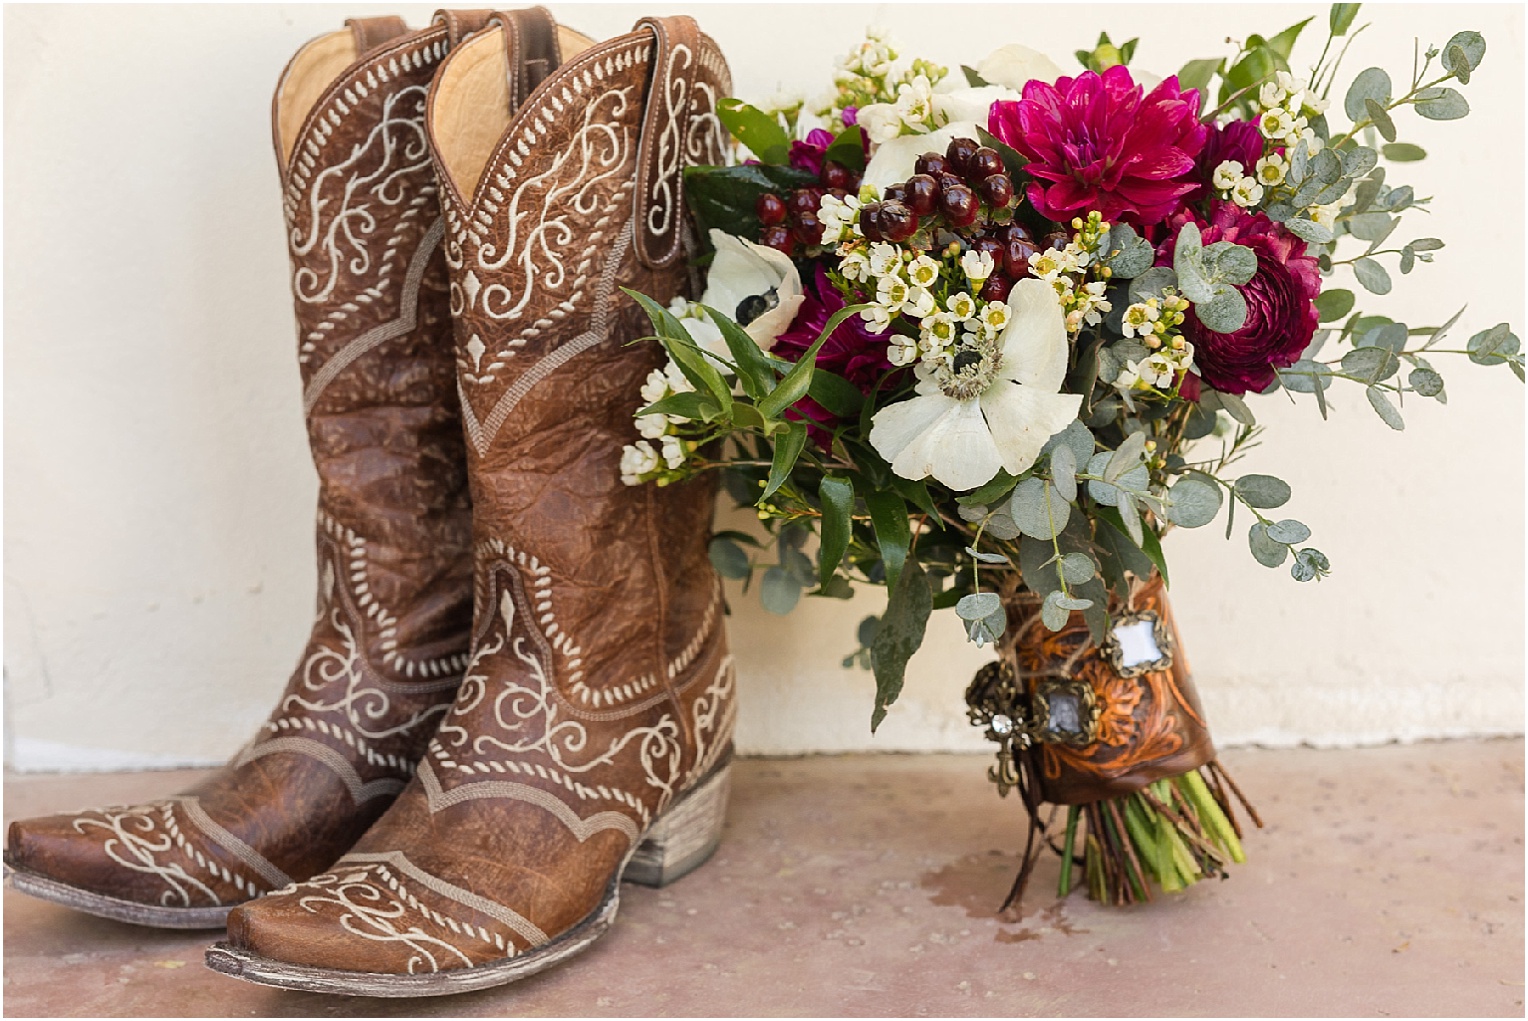 St. Ann's Chapel + Ranch Wedding Tucson AZ Dominique + Luke bridal shoes and flowers